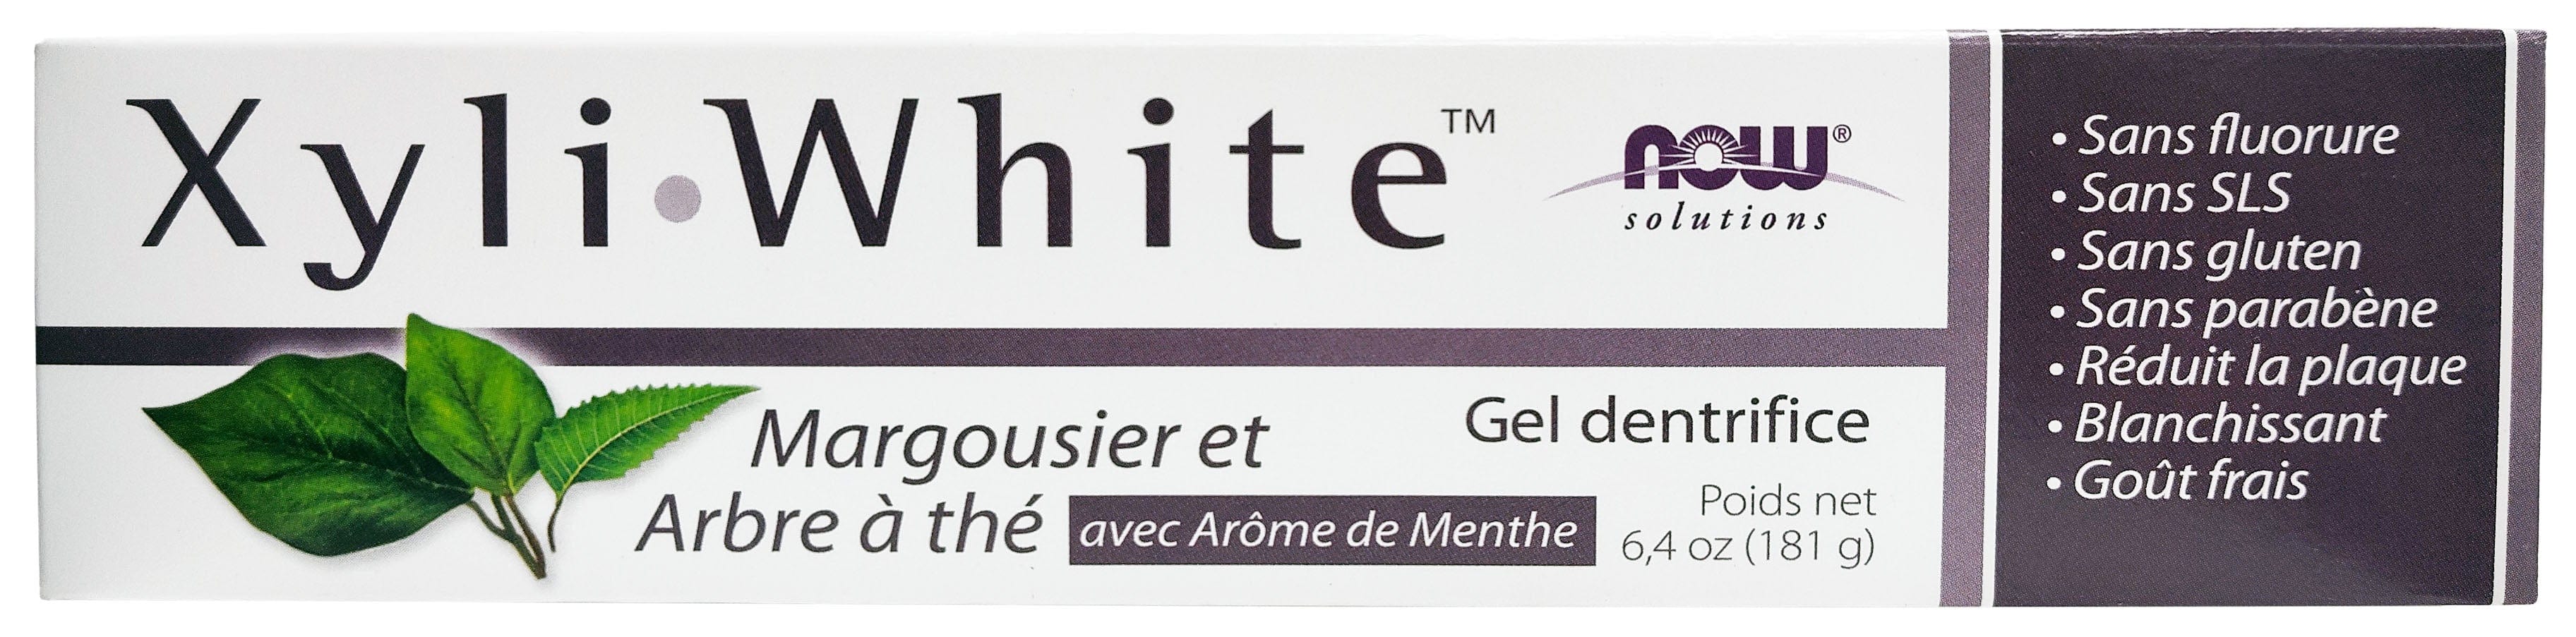 NOW Soins & beauté Gel dentifrice xyliwhite au margousier et arbre de thé (menthe) 181g